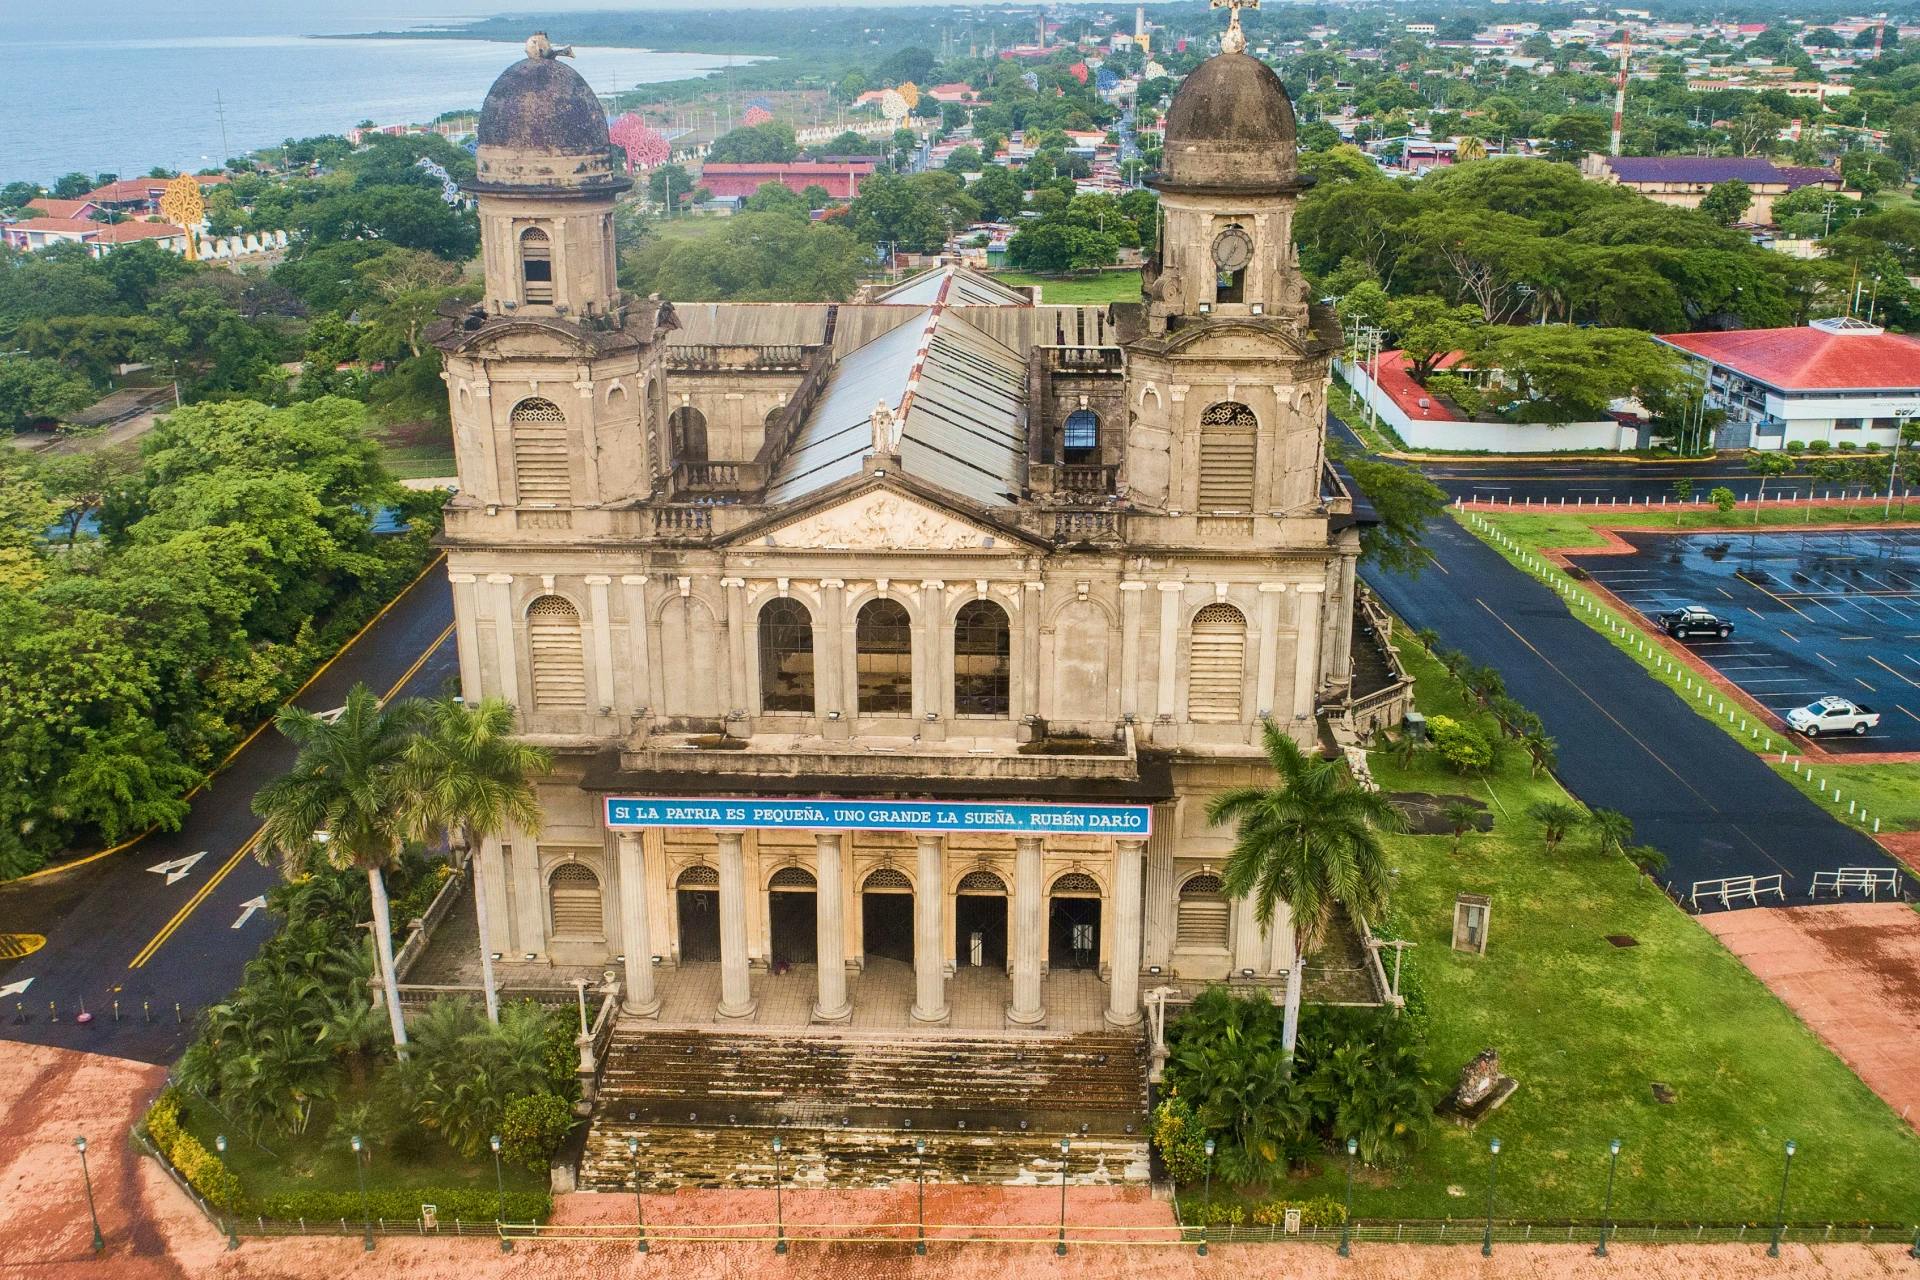 An aerial view of a church near the ocean.